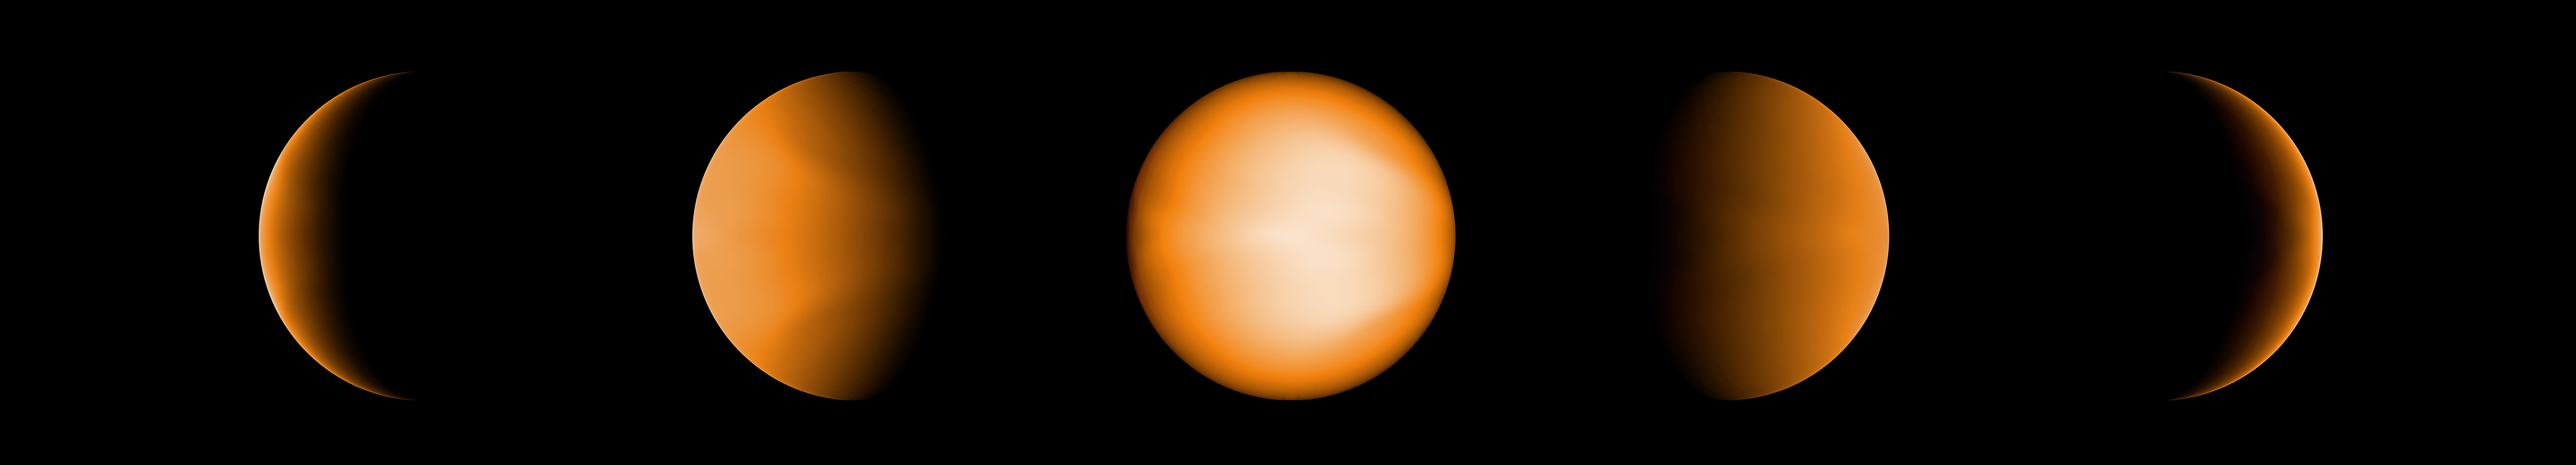 Les différentes phases d'un Jupiter extrêmement chaud tel que le verrait l’œil humain (couleur orangée)